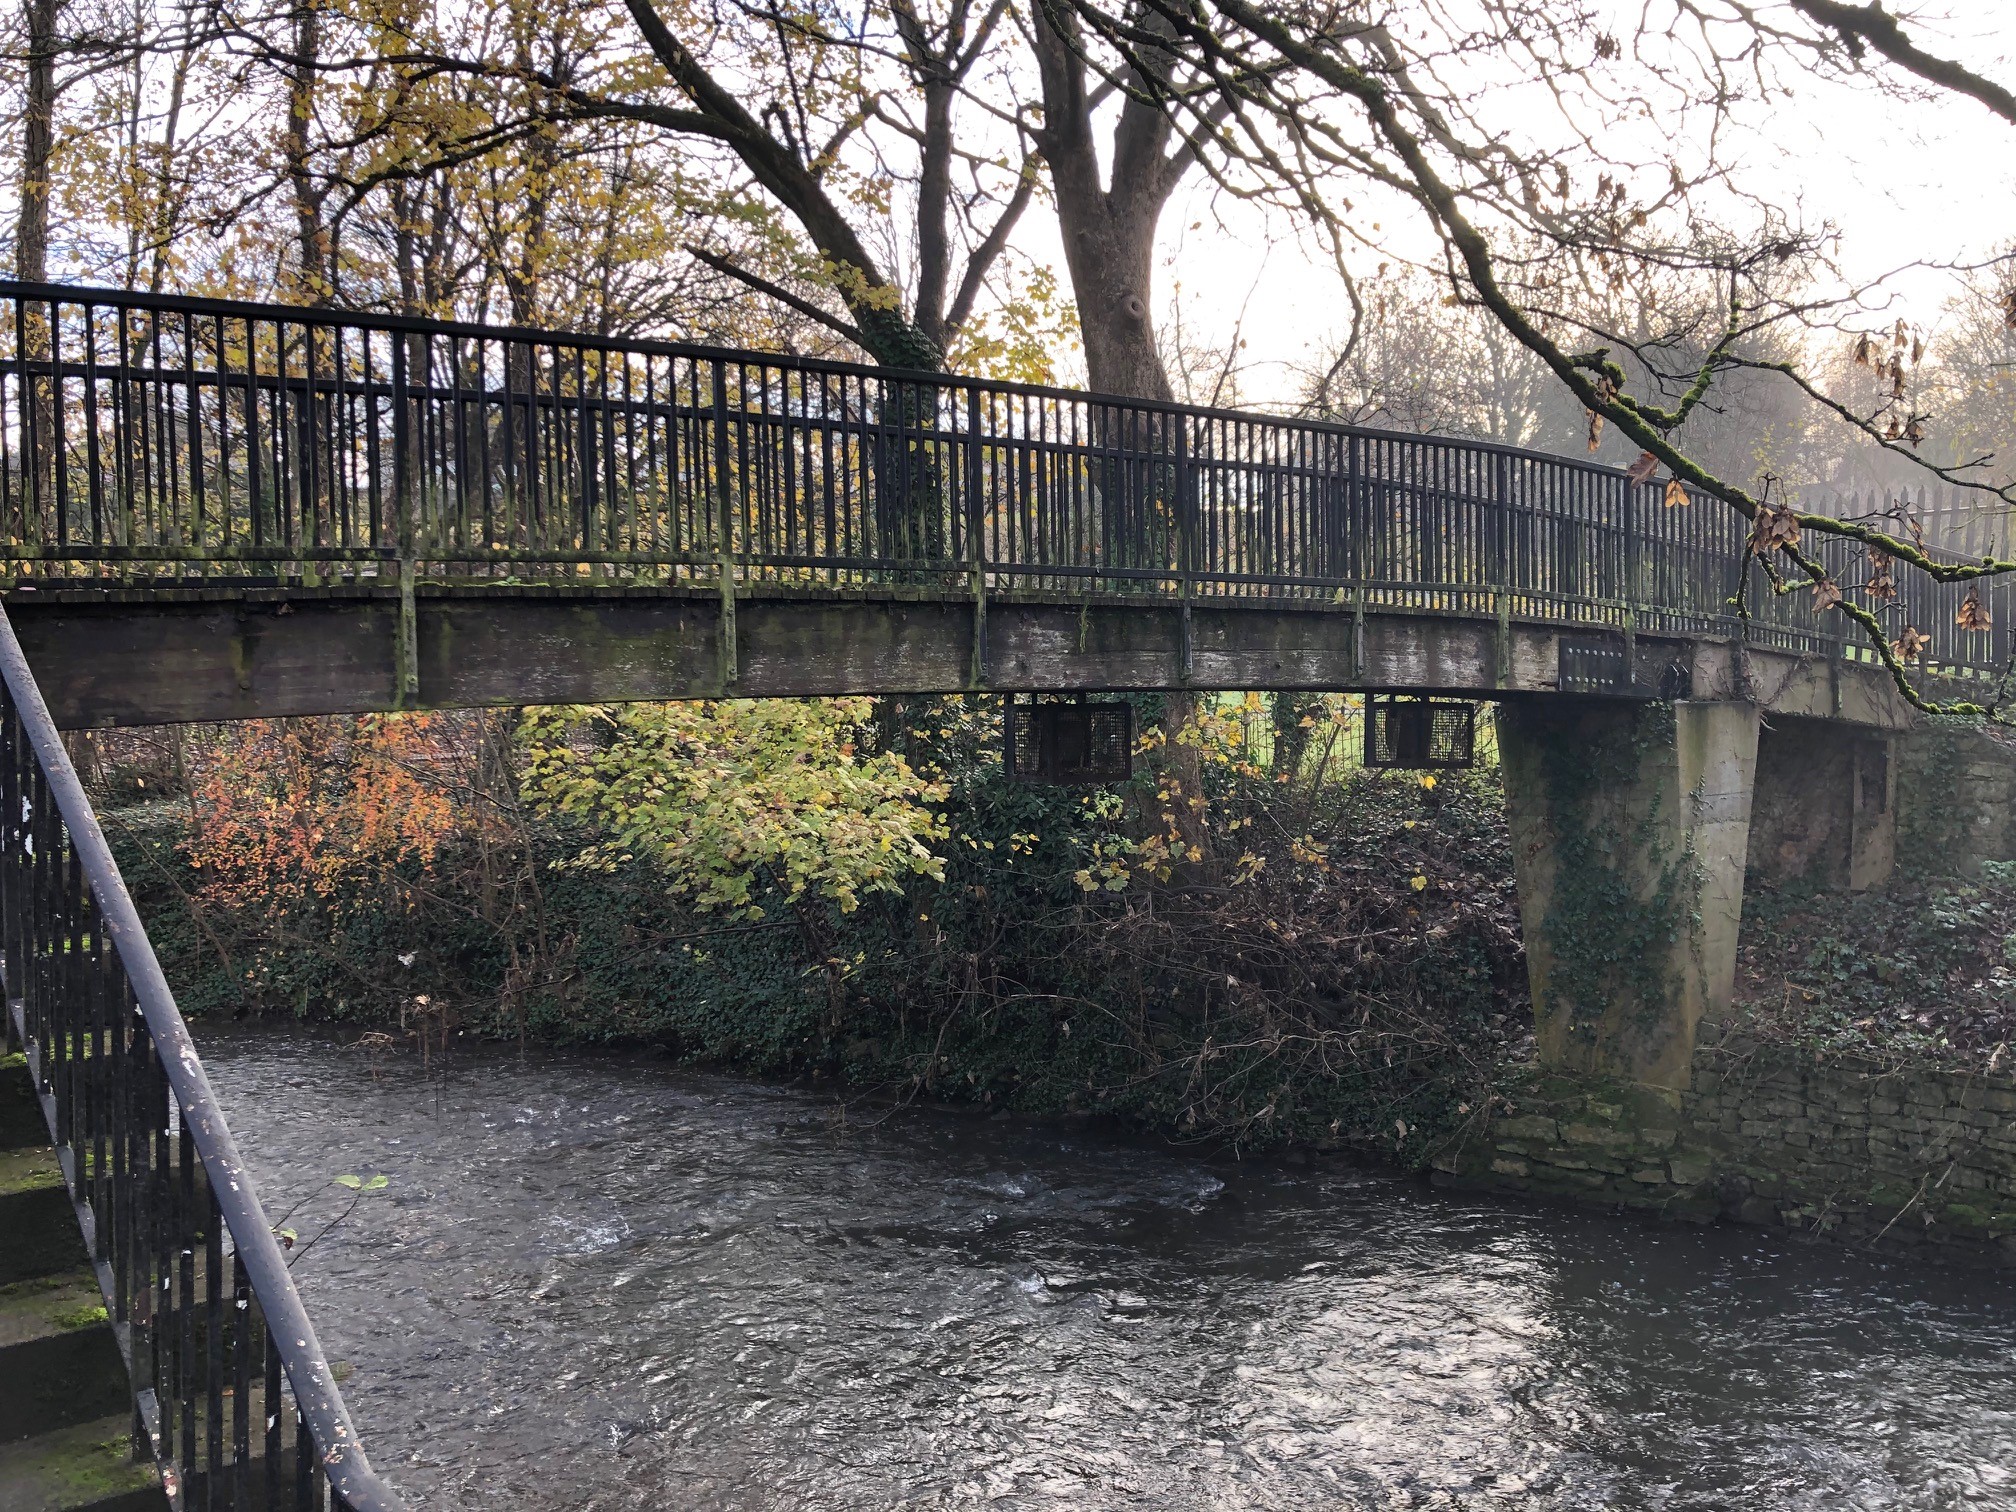 Existing footbridge at Keynsham Memorial Park